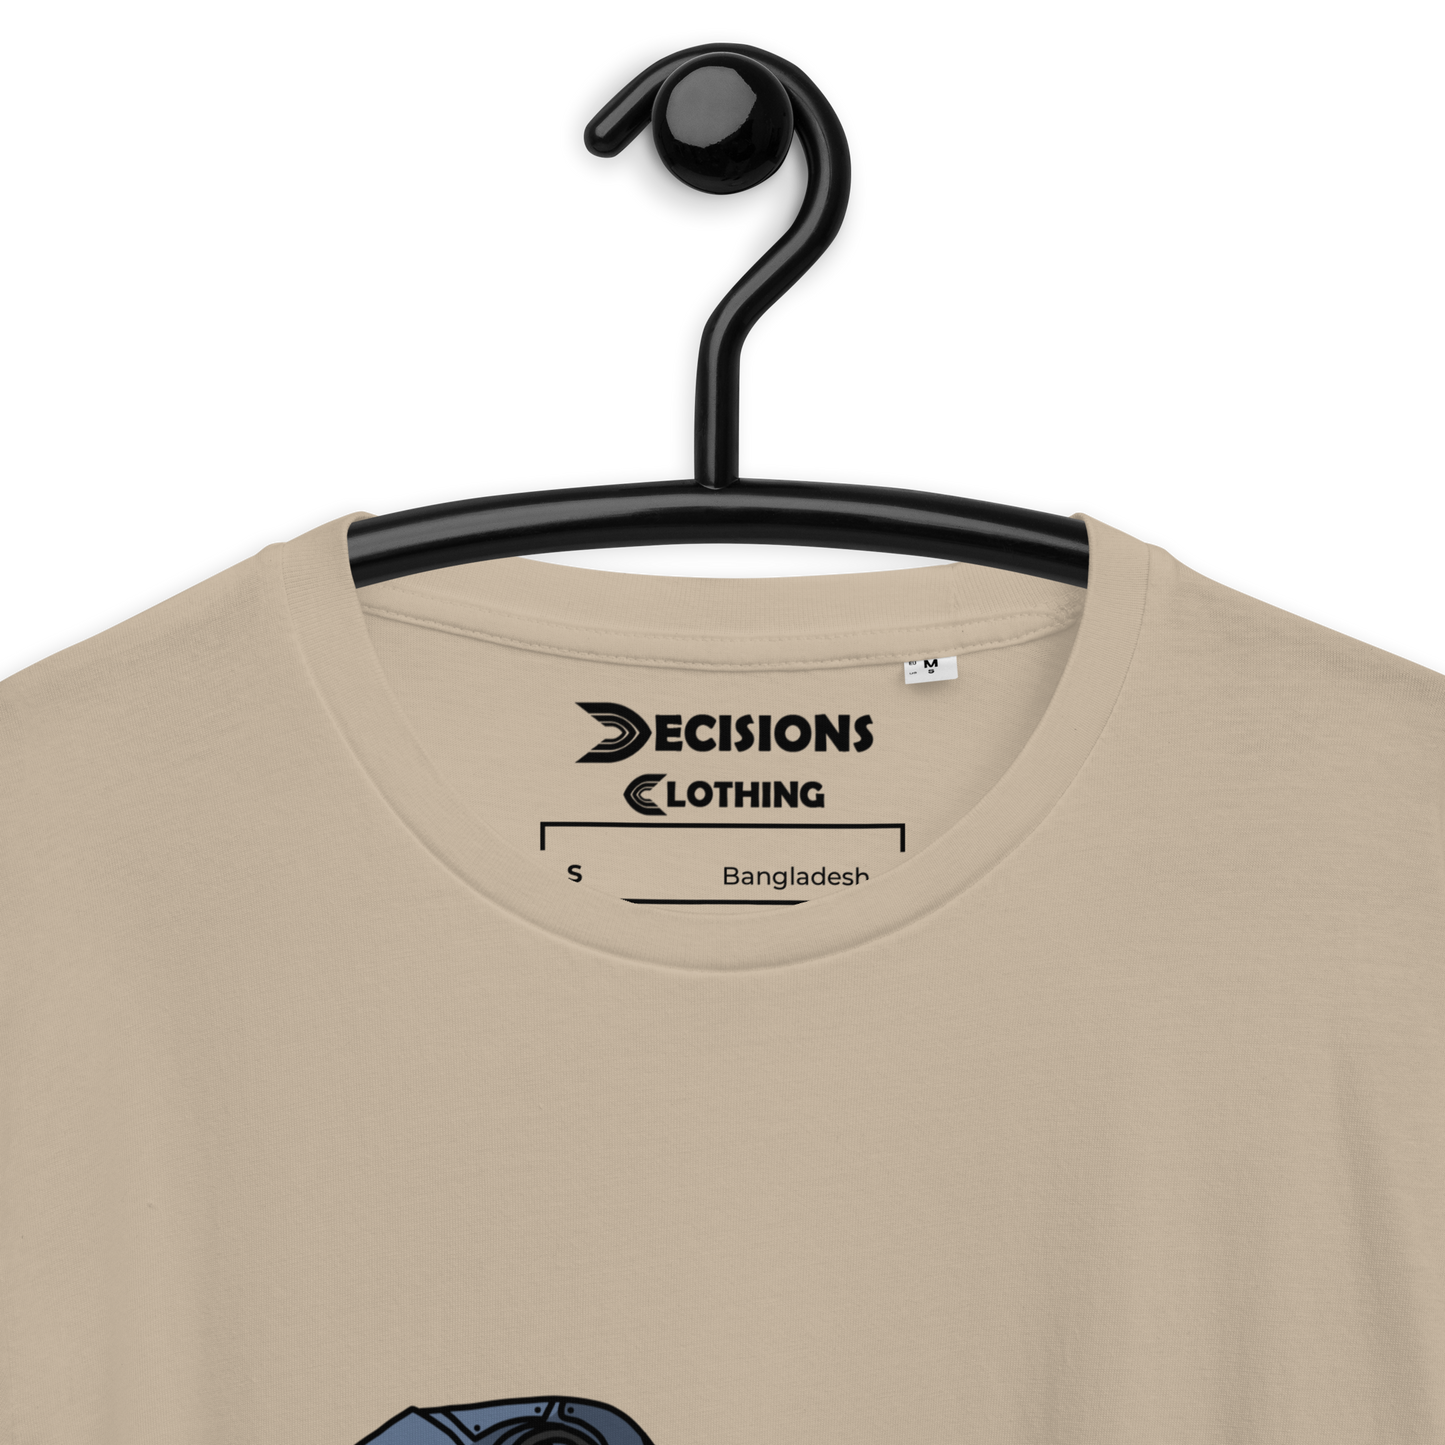 Pathfinder Nessie T-Shirt (Apex Legends)